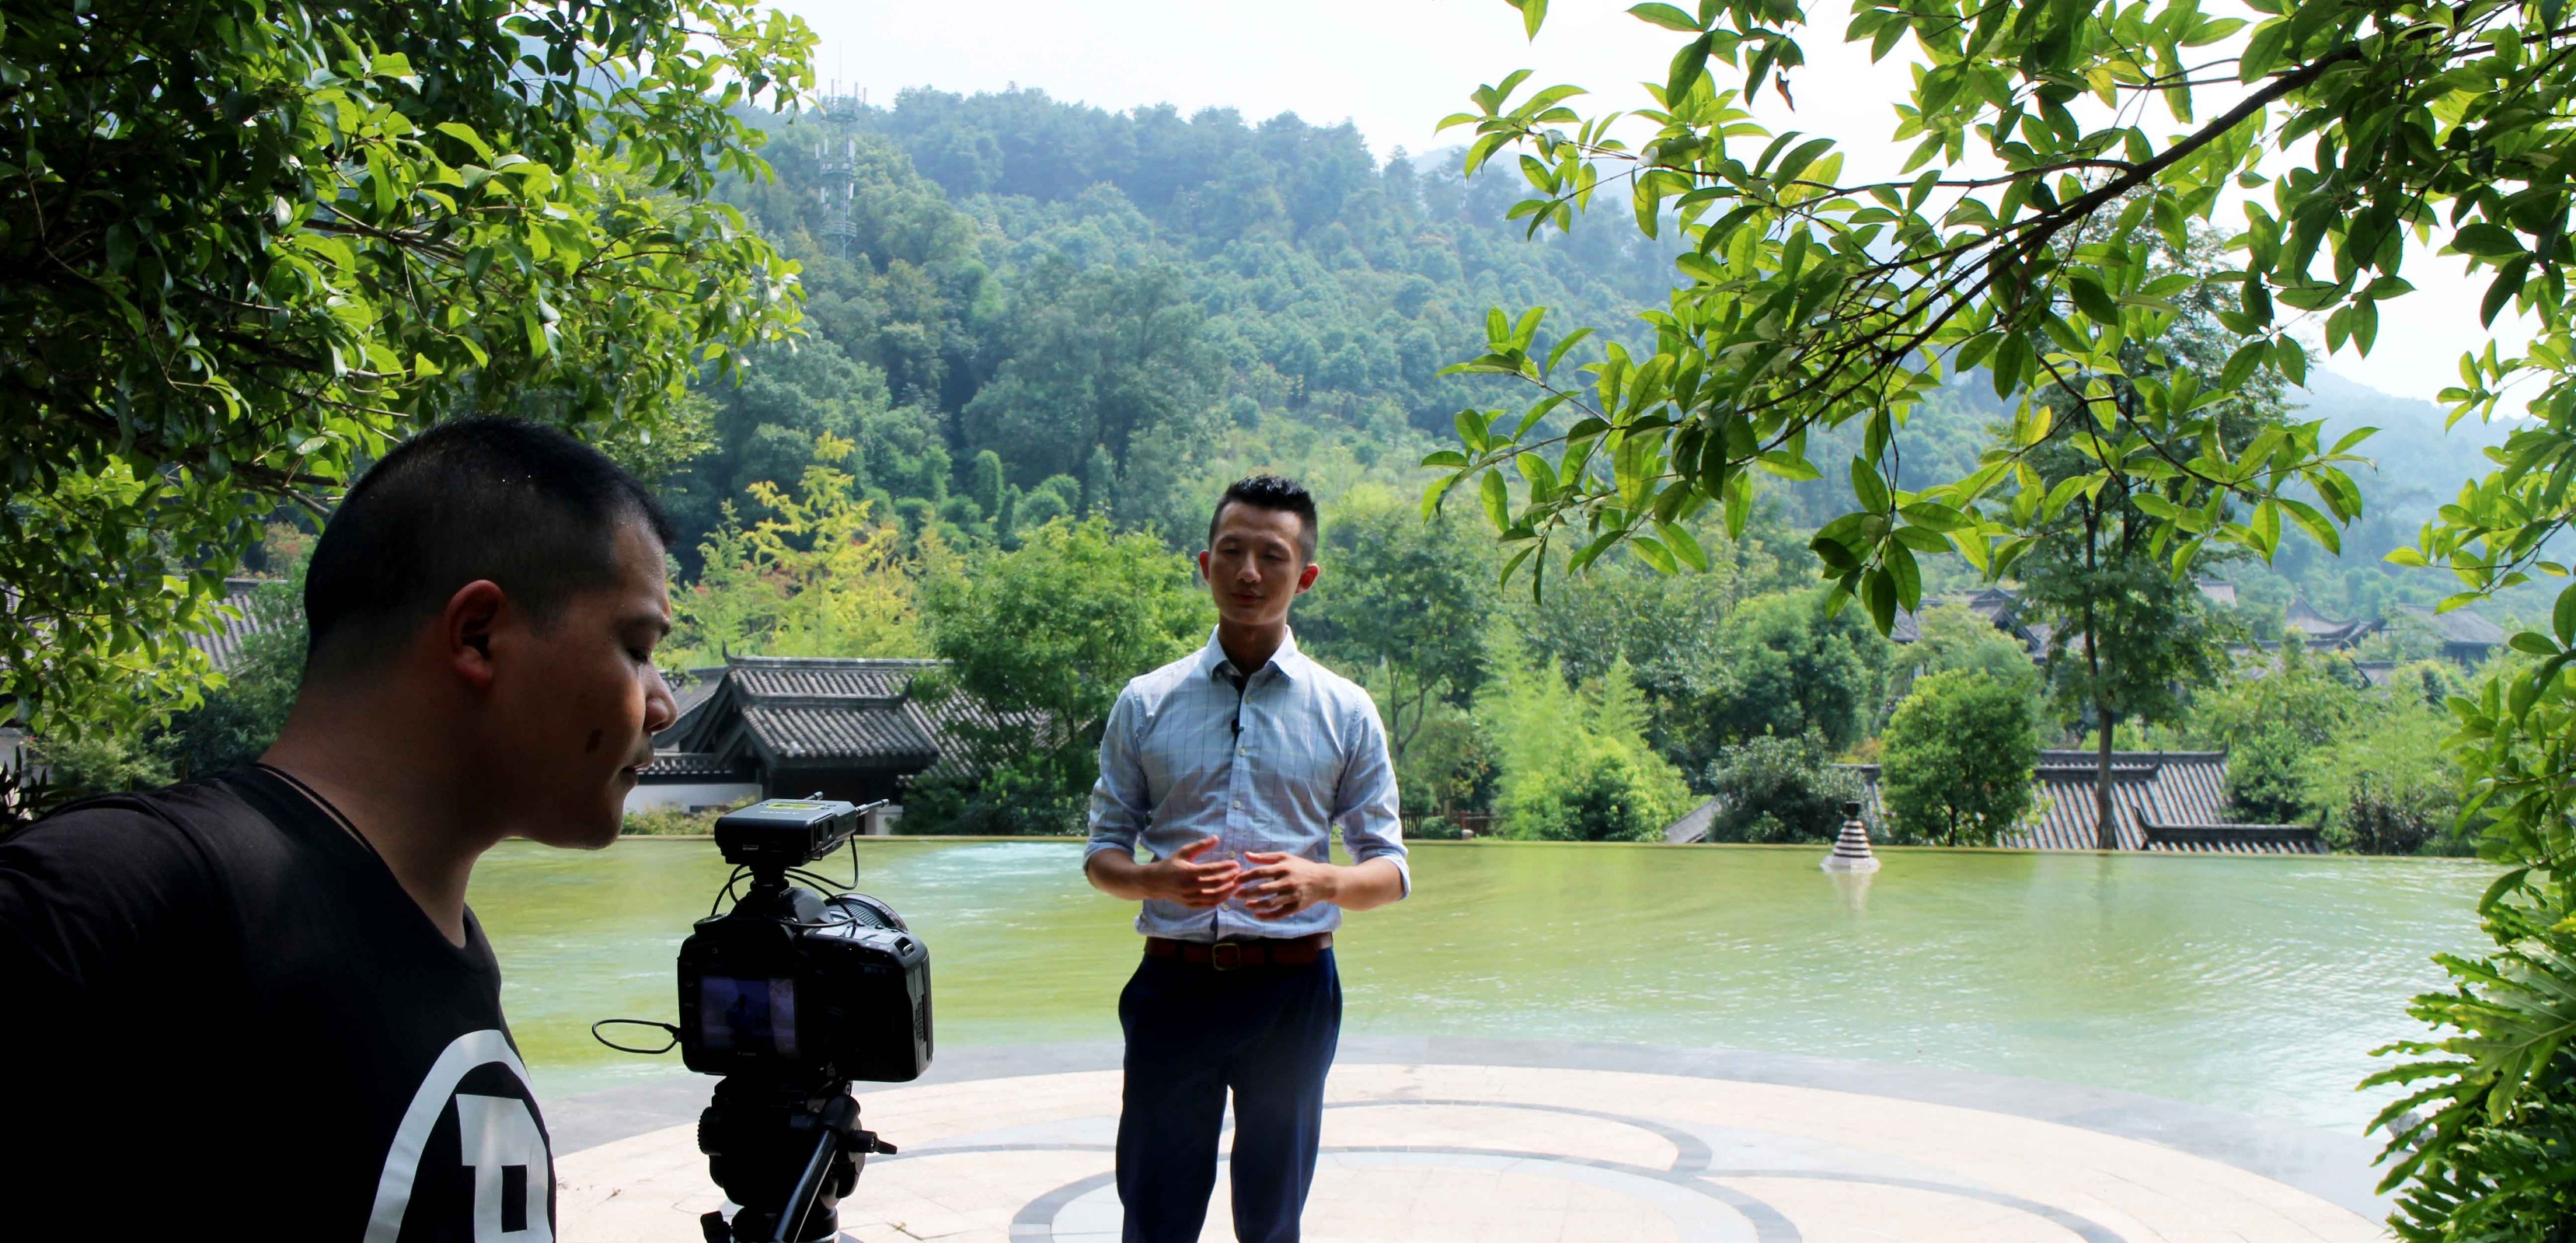 重庆电视台《重庆名片》栏目 香山峰会特别节目“重庆旅游名片” 摄制完成并播出